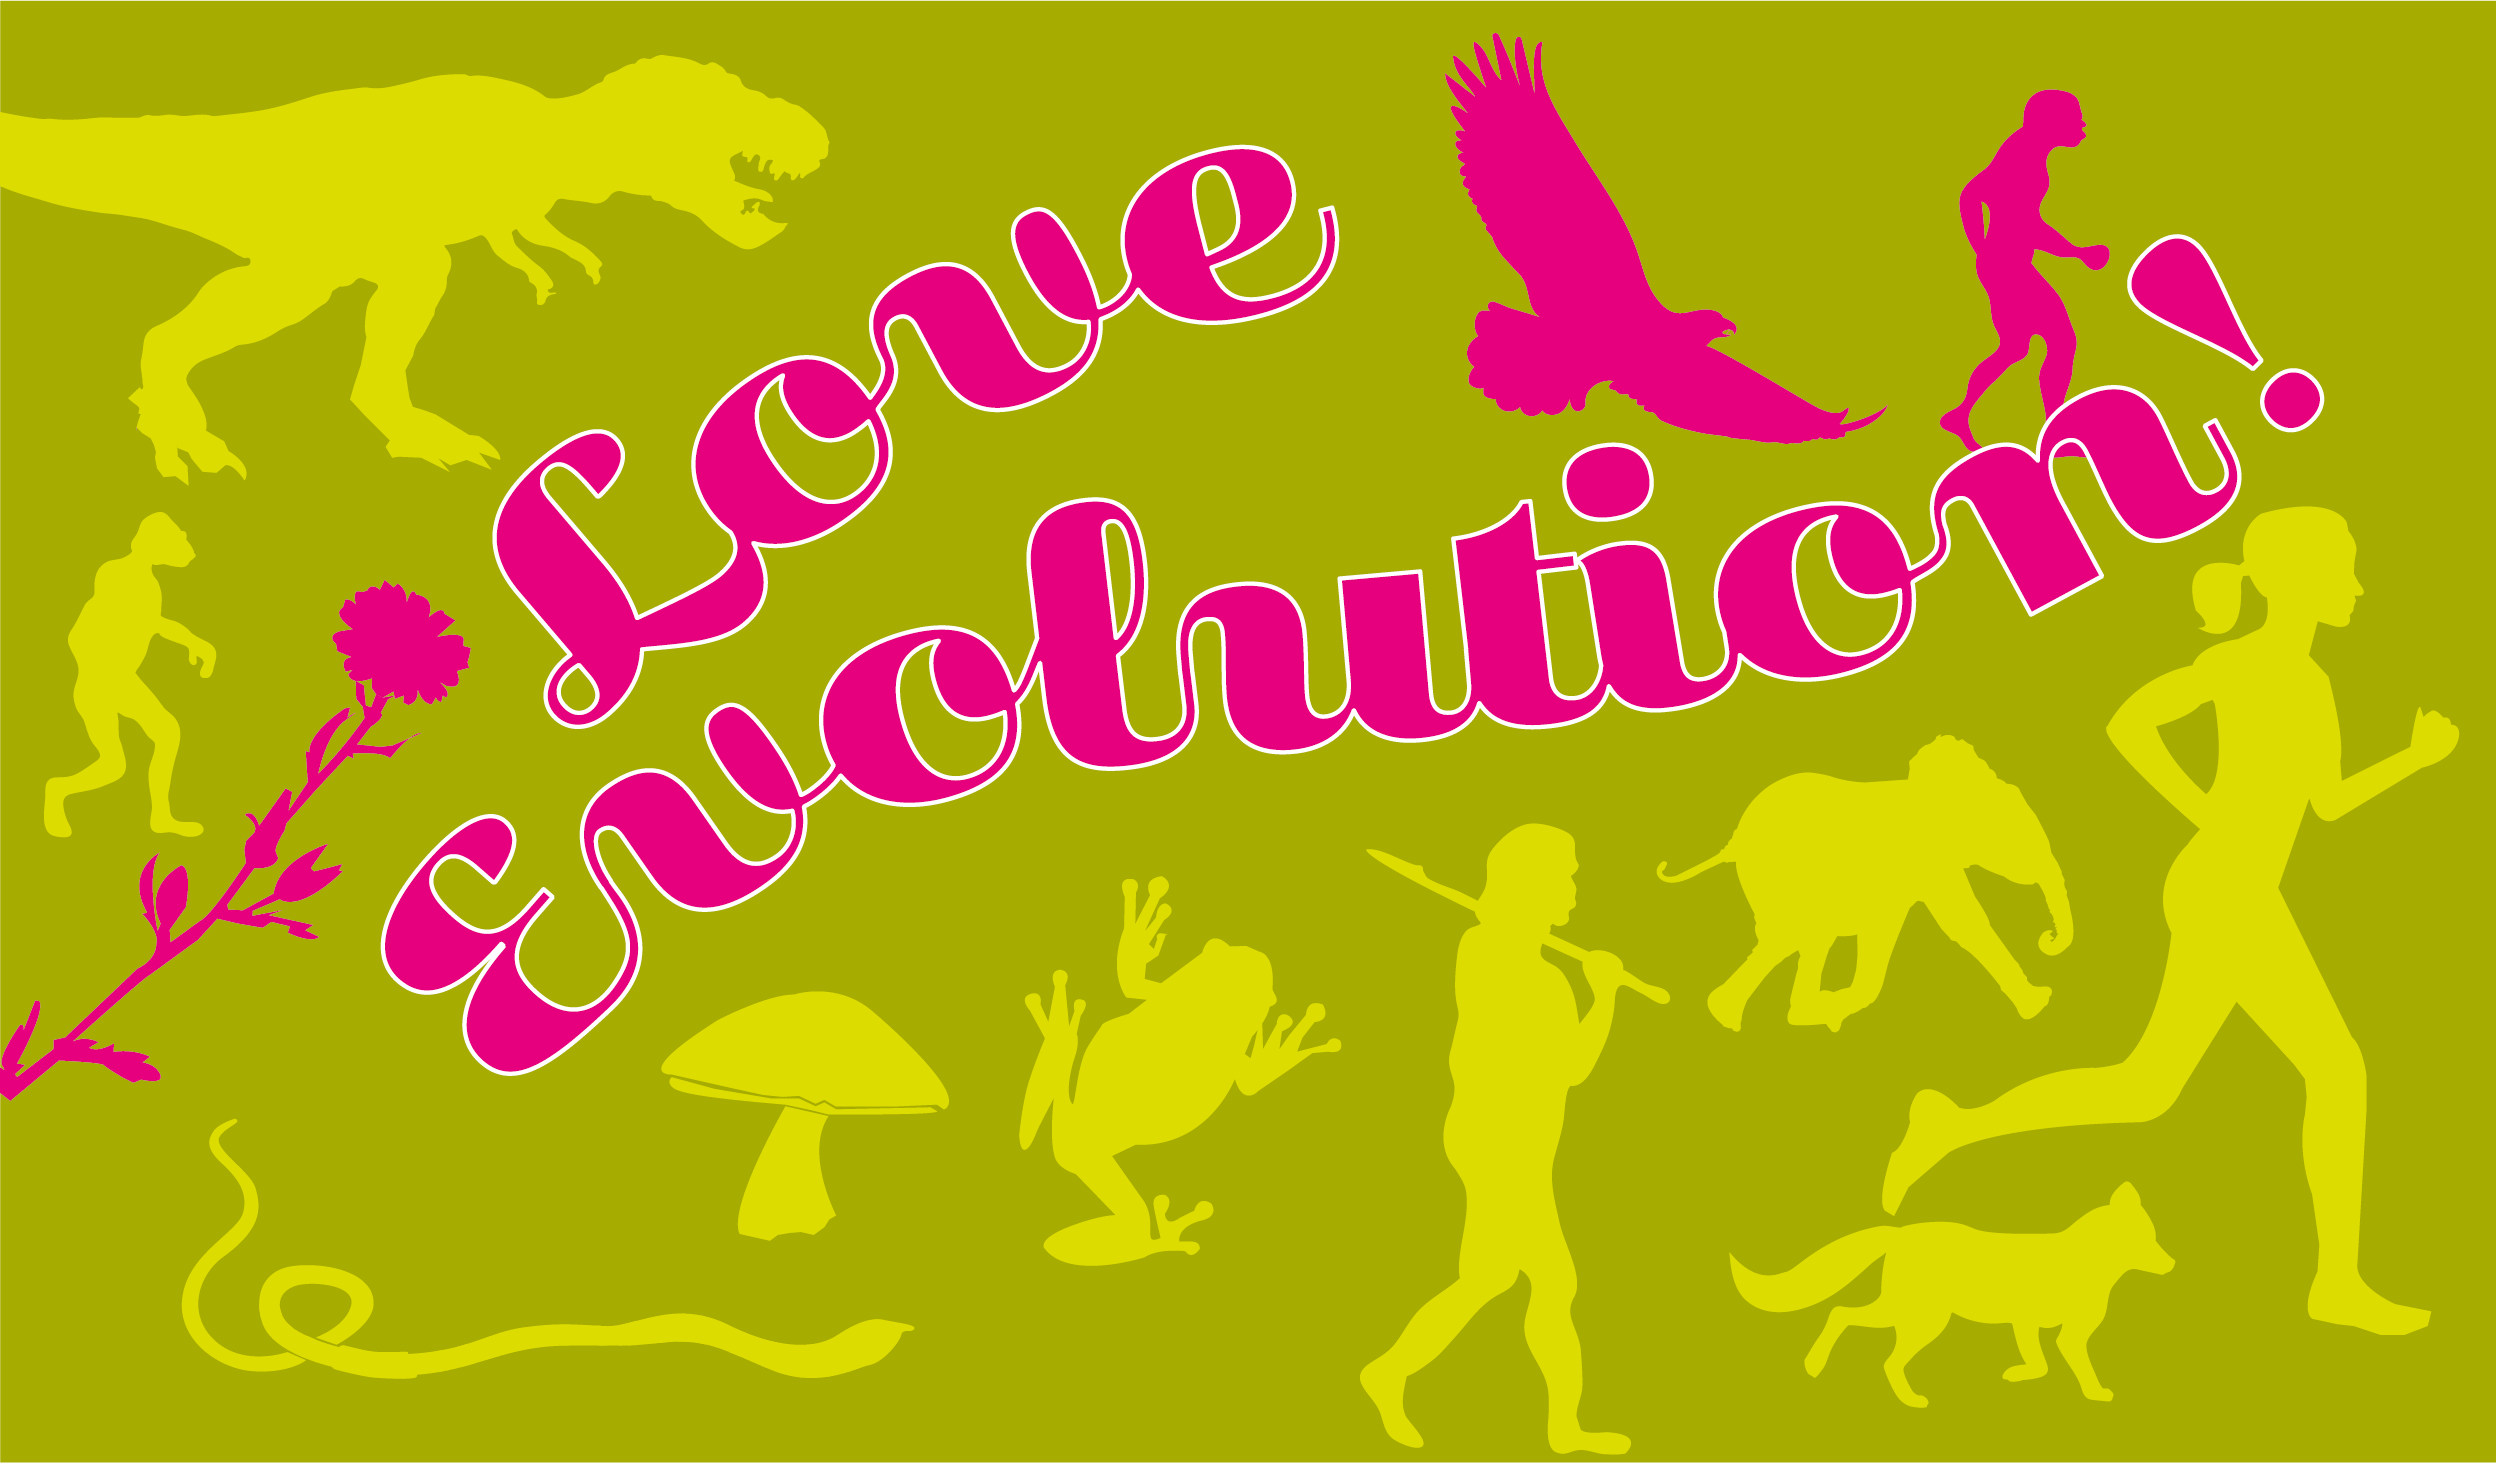 En skylt för Darwin-dagen med växter och djur samt texten "Love evolution".